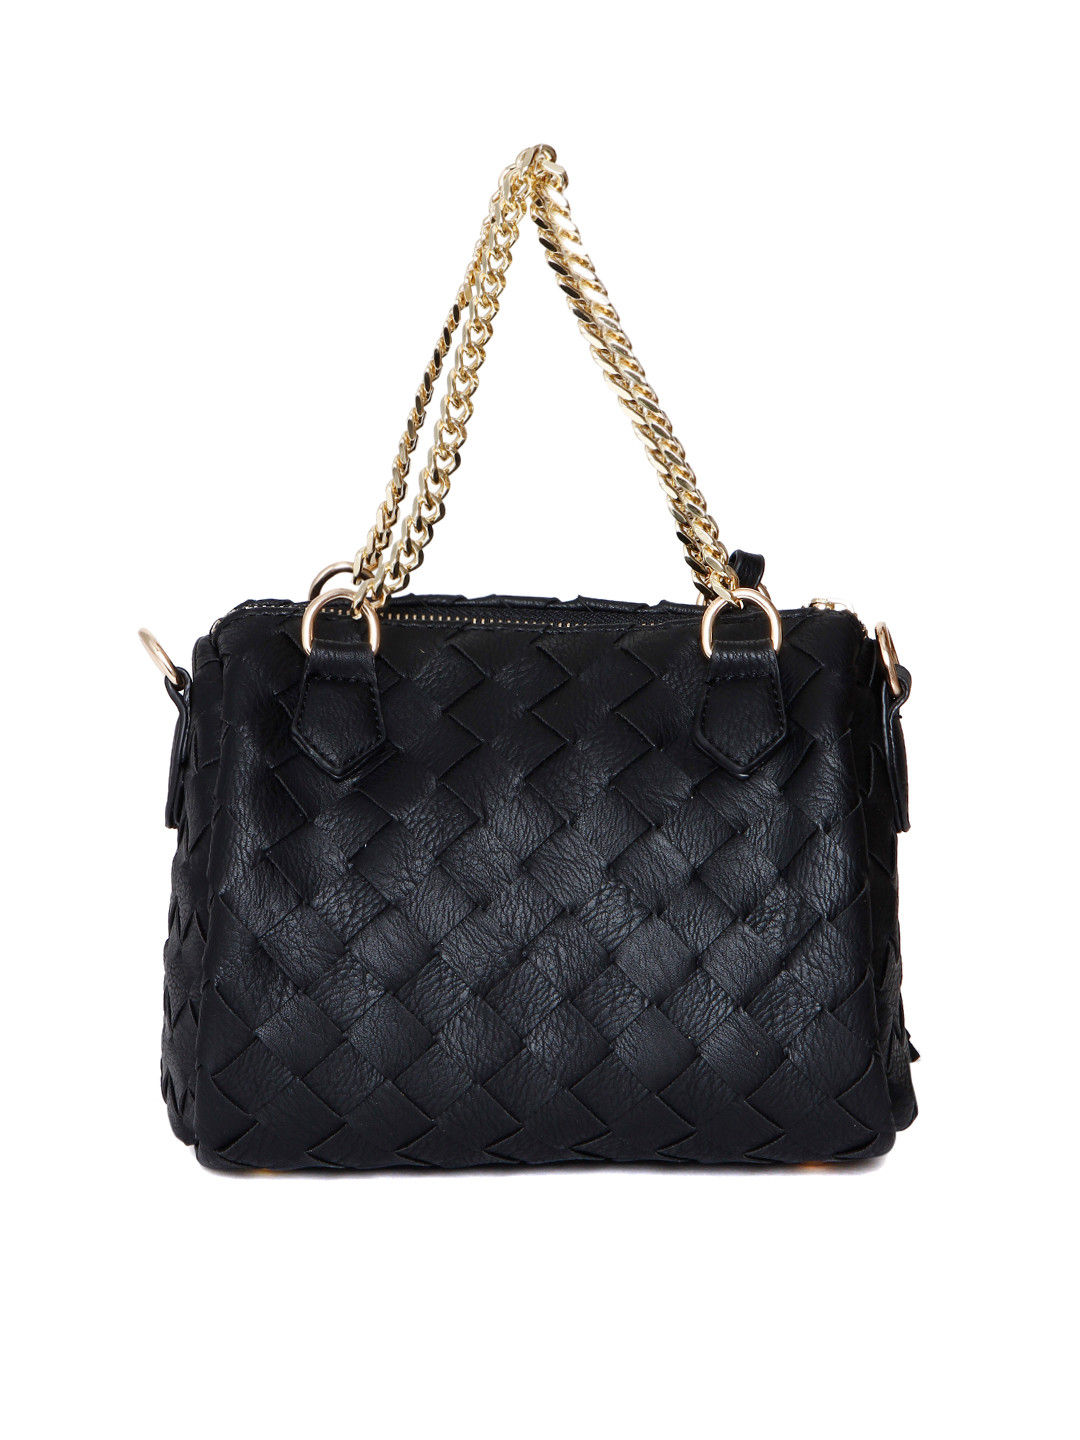 Buy Metro Black Quilted Medium Handbag Online At Best Price @ Tata CLiQ